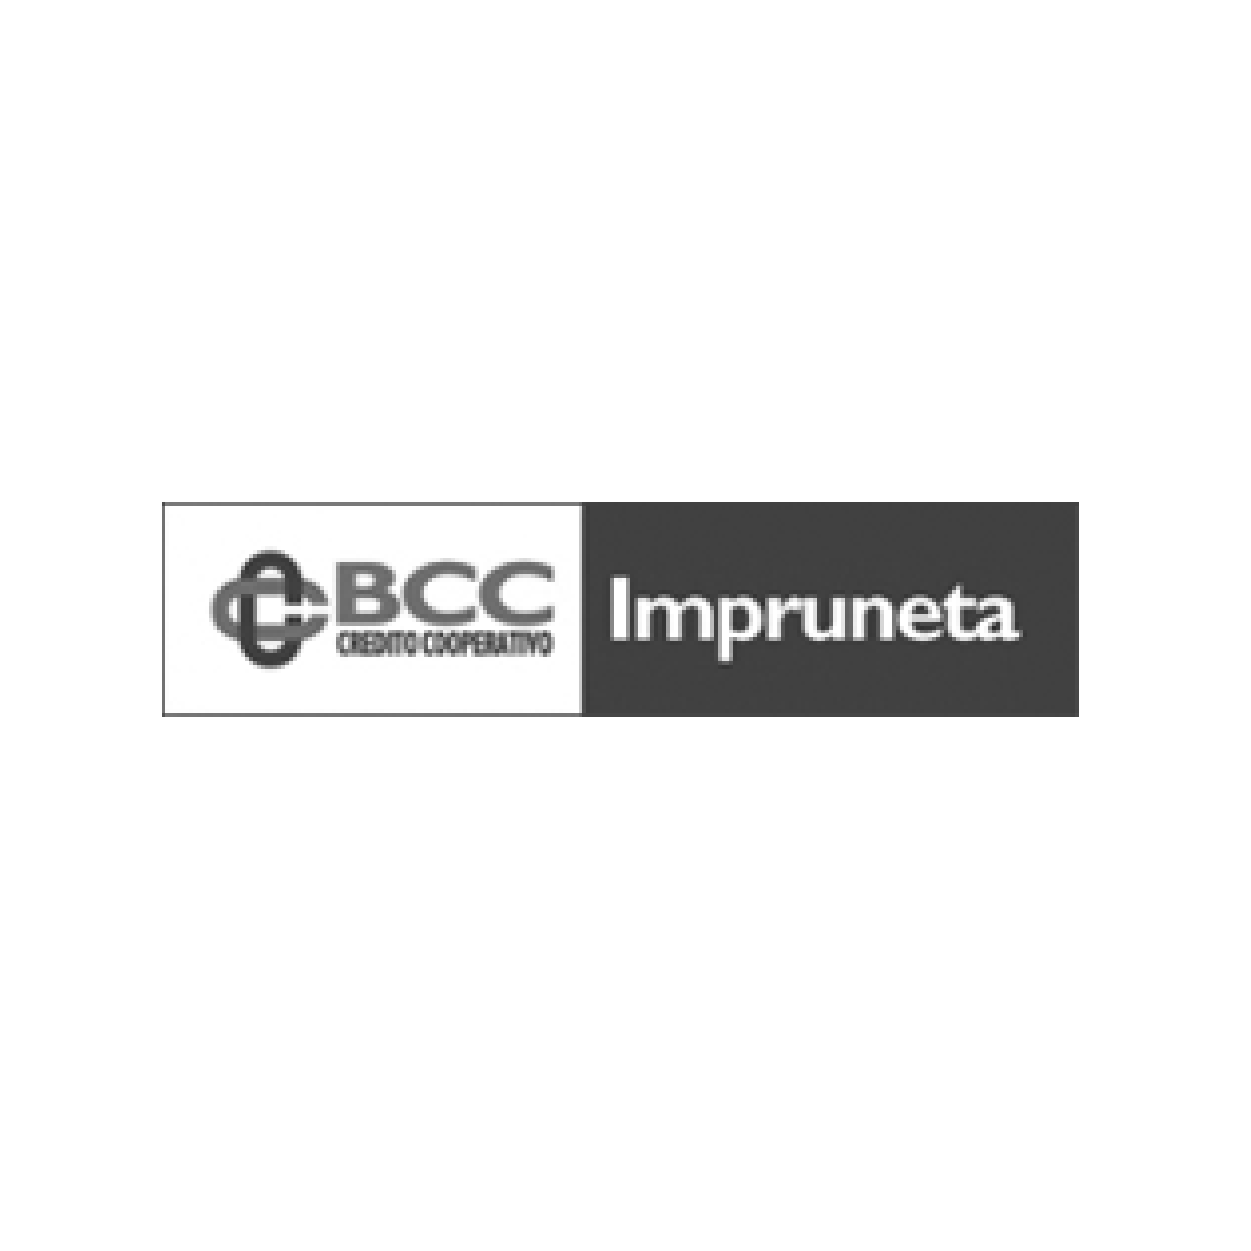 Advertising BCC Credito Cooperativo | Ad.One Agenzia di comunicazione